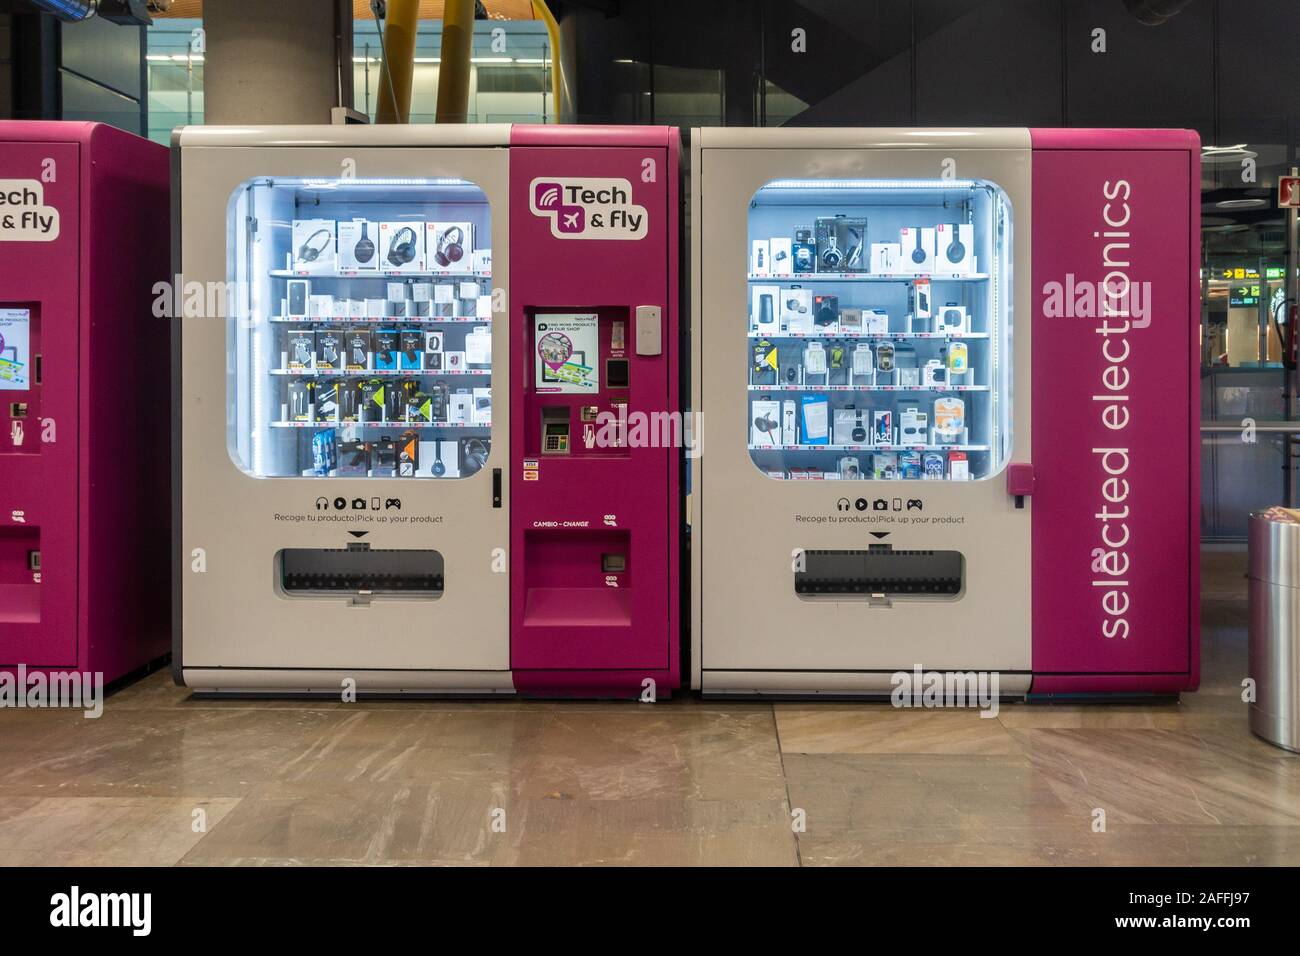 Automaten durch Tech Besitz & Fliegen können Kunden schnell Technologie Geräte in Adolfo Suárez Flughafen Barajas, Madrid, Spanien kaufen Stockfoto